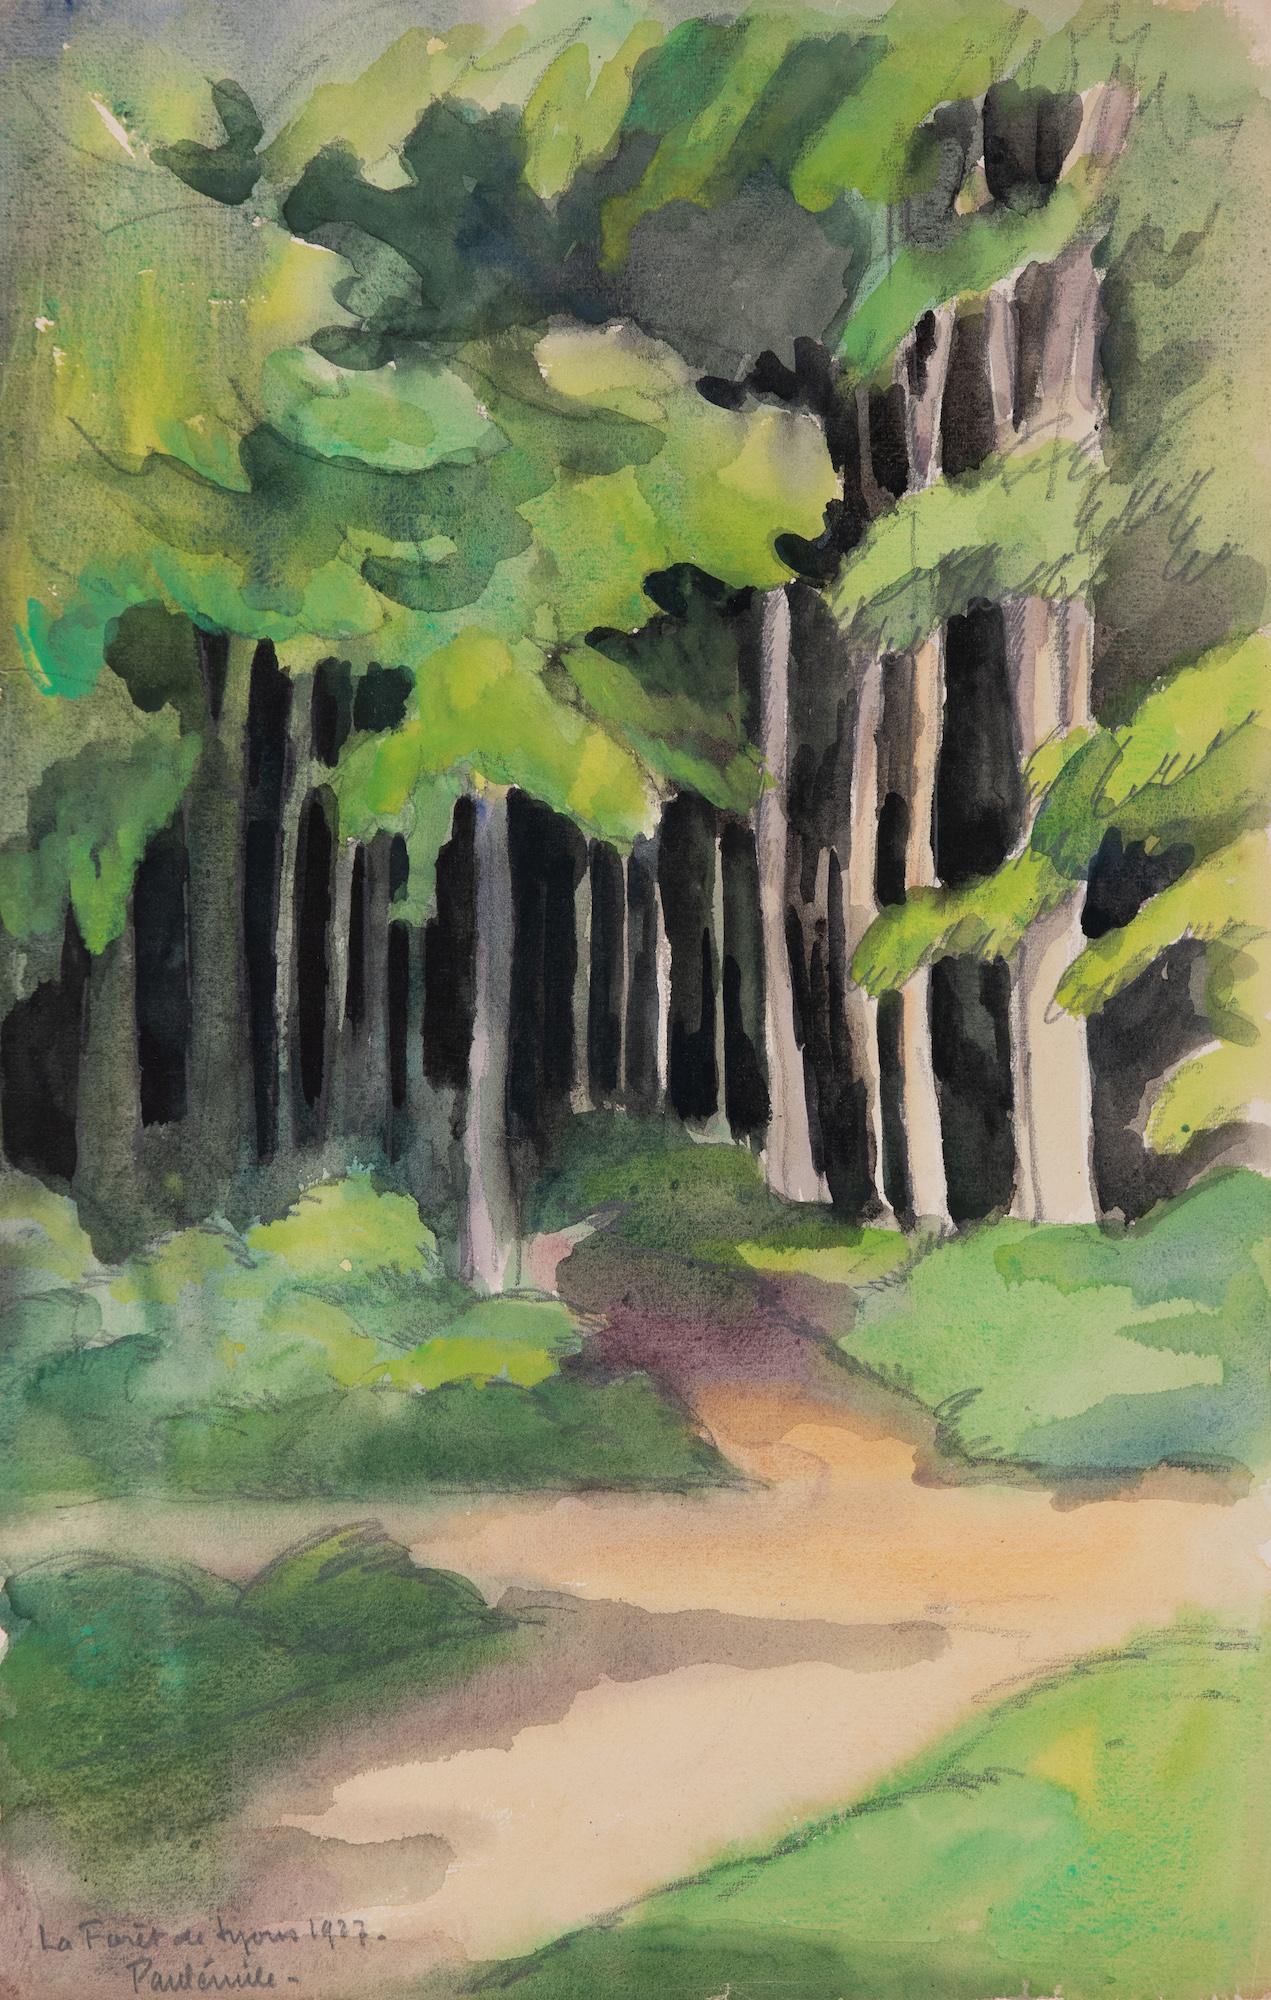 Paul Emile Pissarro Landscape Art - La Forêt de Lyons by Paulémile Pissarro - Watercolour landscape